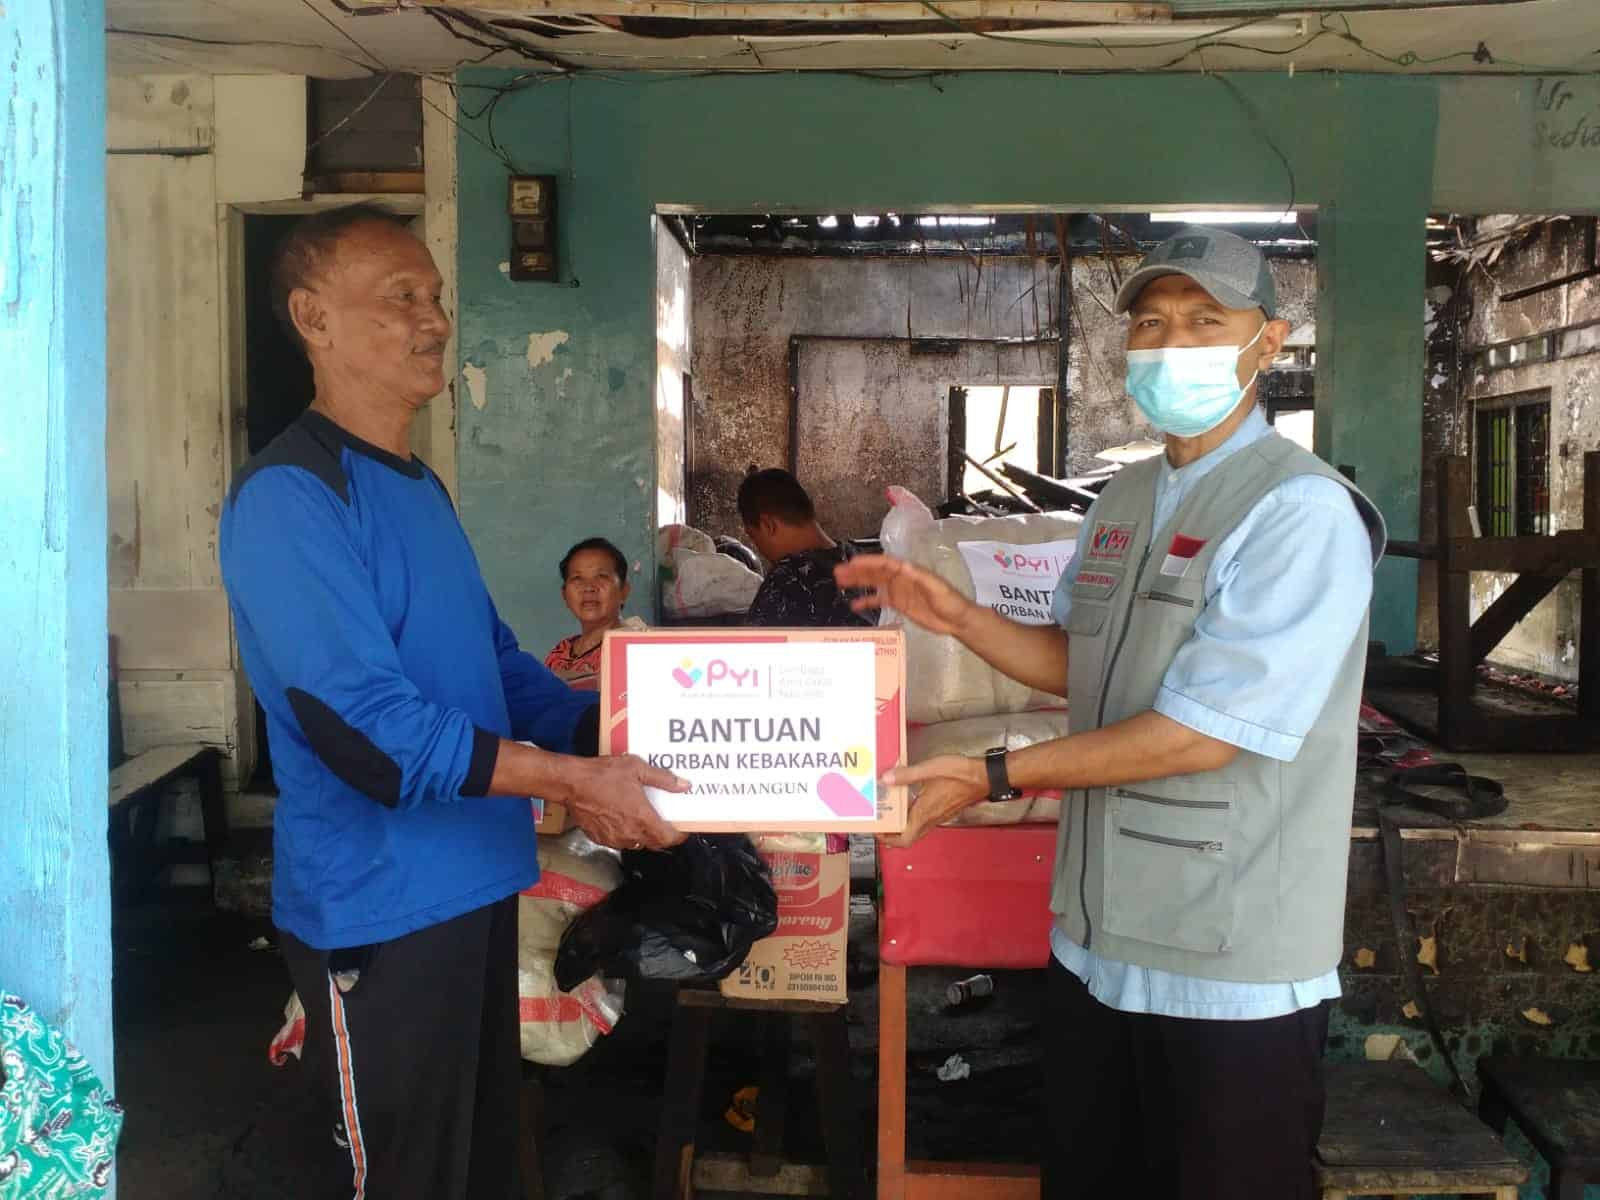 PYI Yatim & Zakat Salurkan Bantuan Untuk Korban Kebakaran di Rawamangun